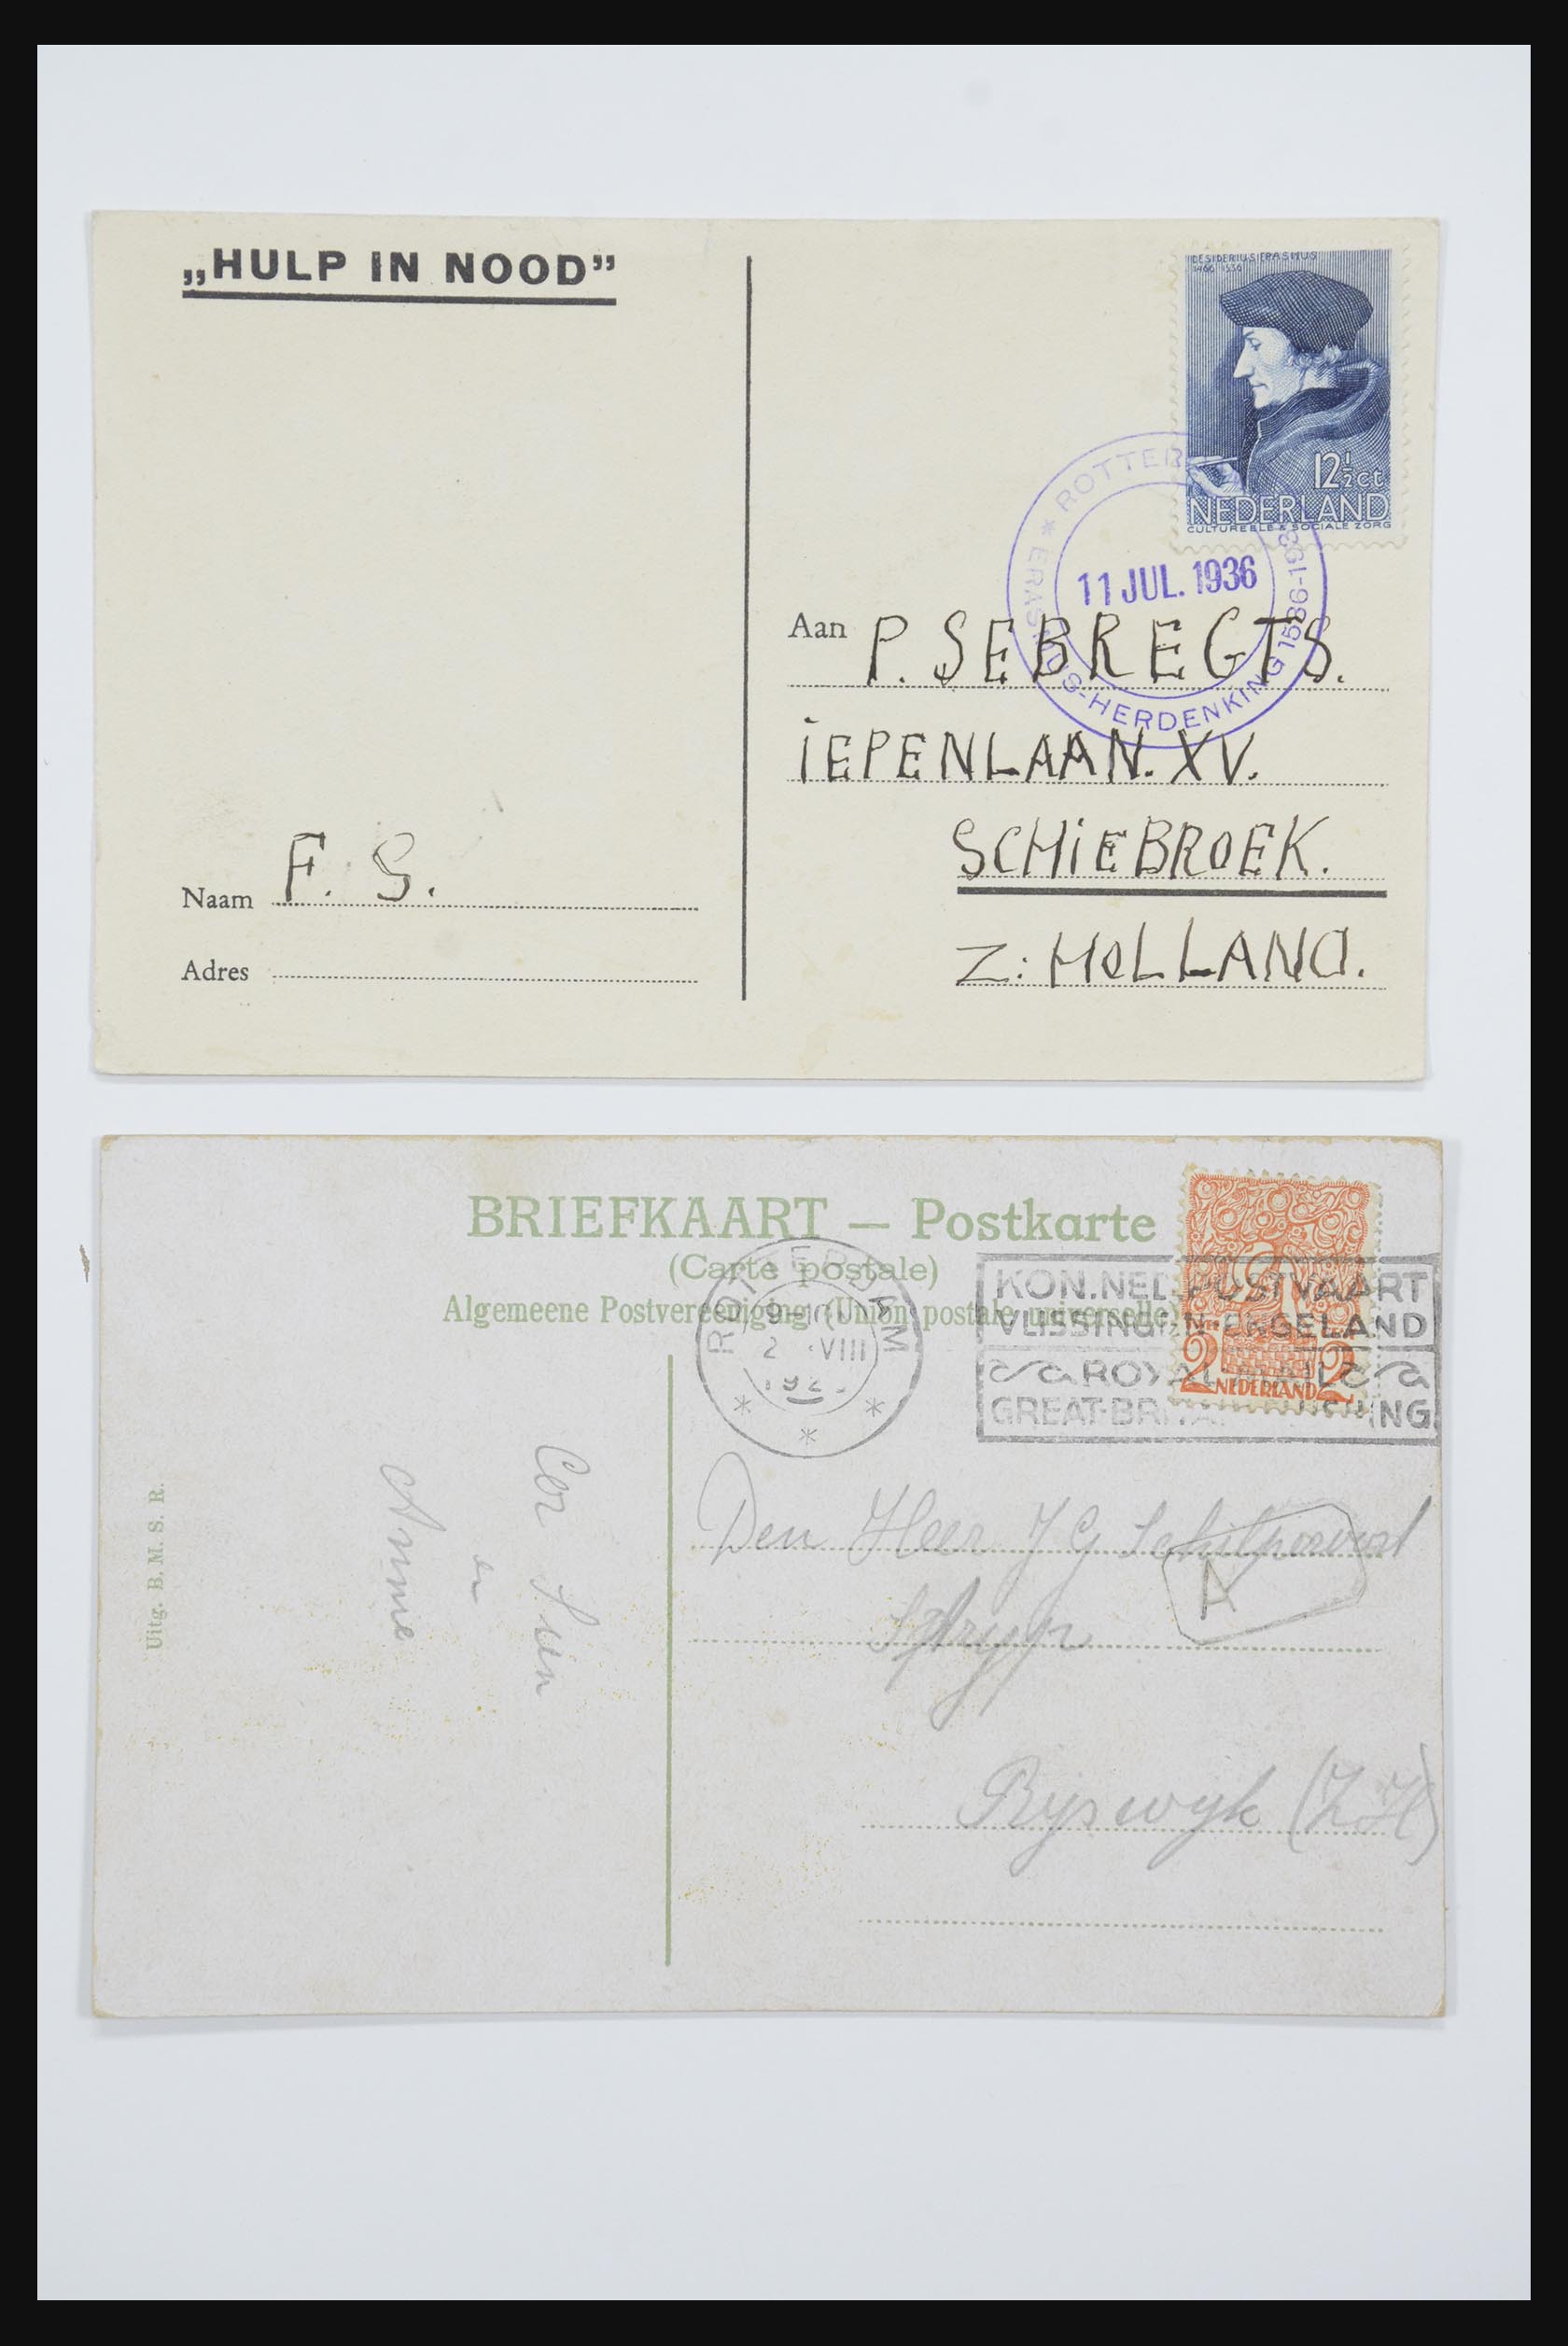 31668 043 - 31668 Nederland ansichtkaarten 1905-1935.